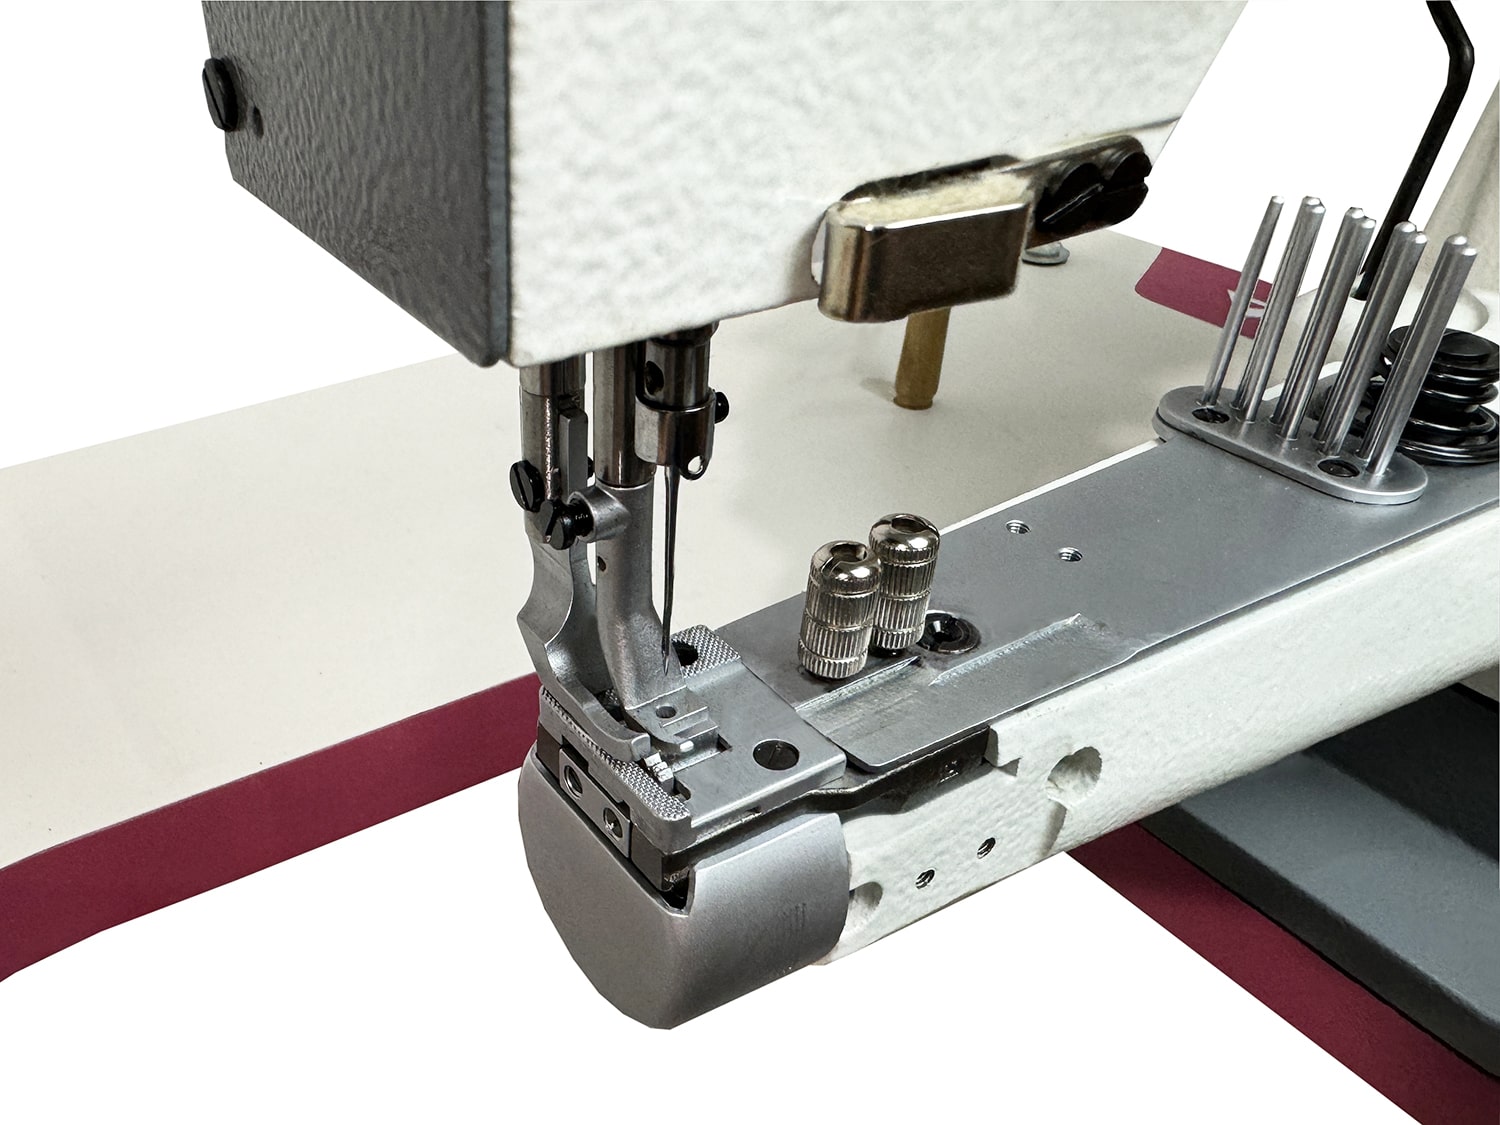 Рукавная швейная машина для окантовки Aurora A-335BD-LG (Прямой привод, увеличенный челнок)